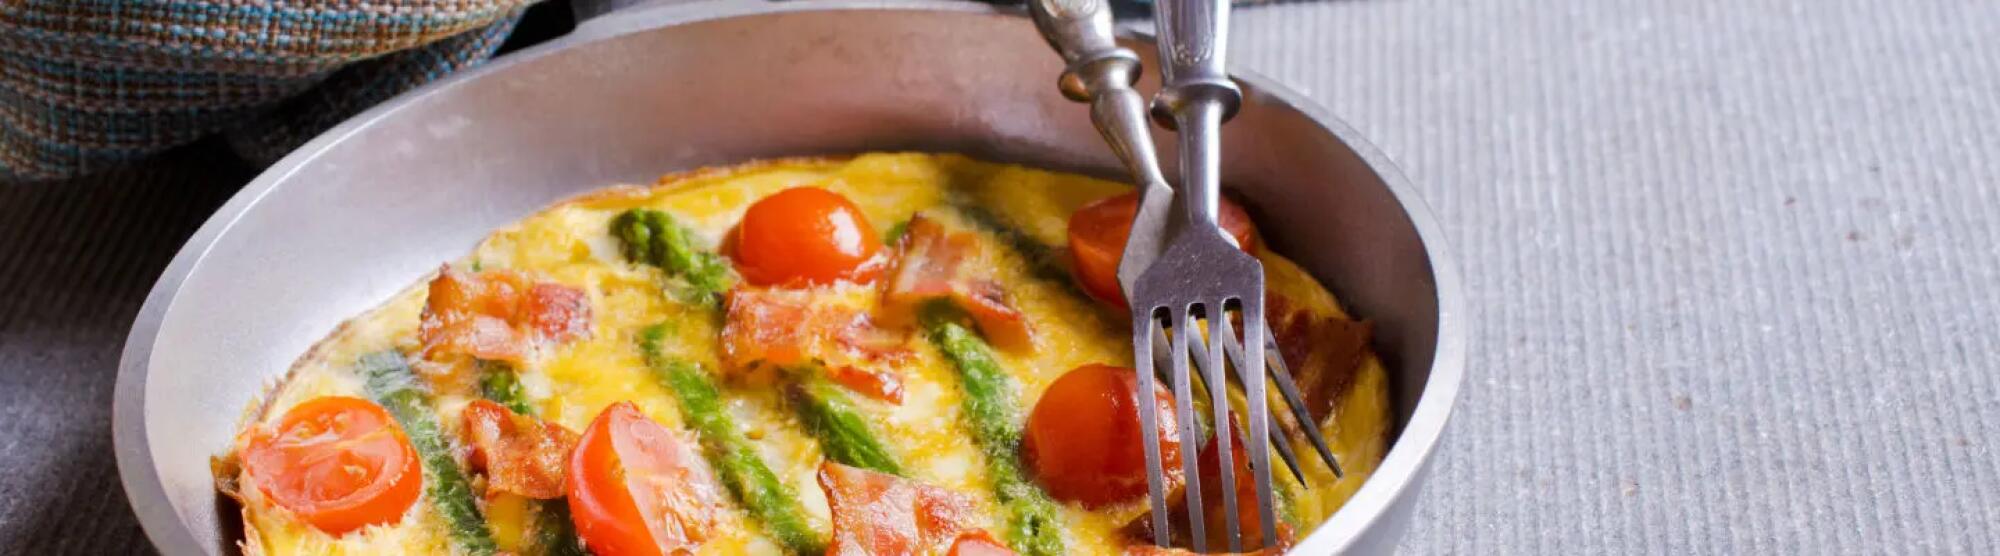 Recette : Omelette aux asperges sauvages, tomates et fromage frais